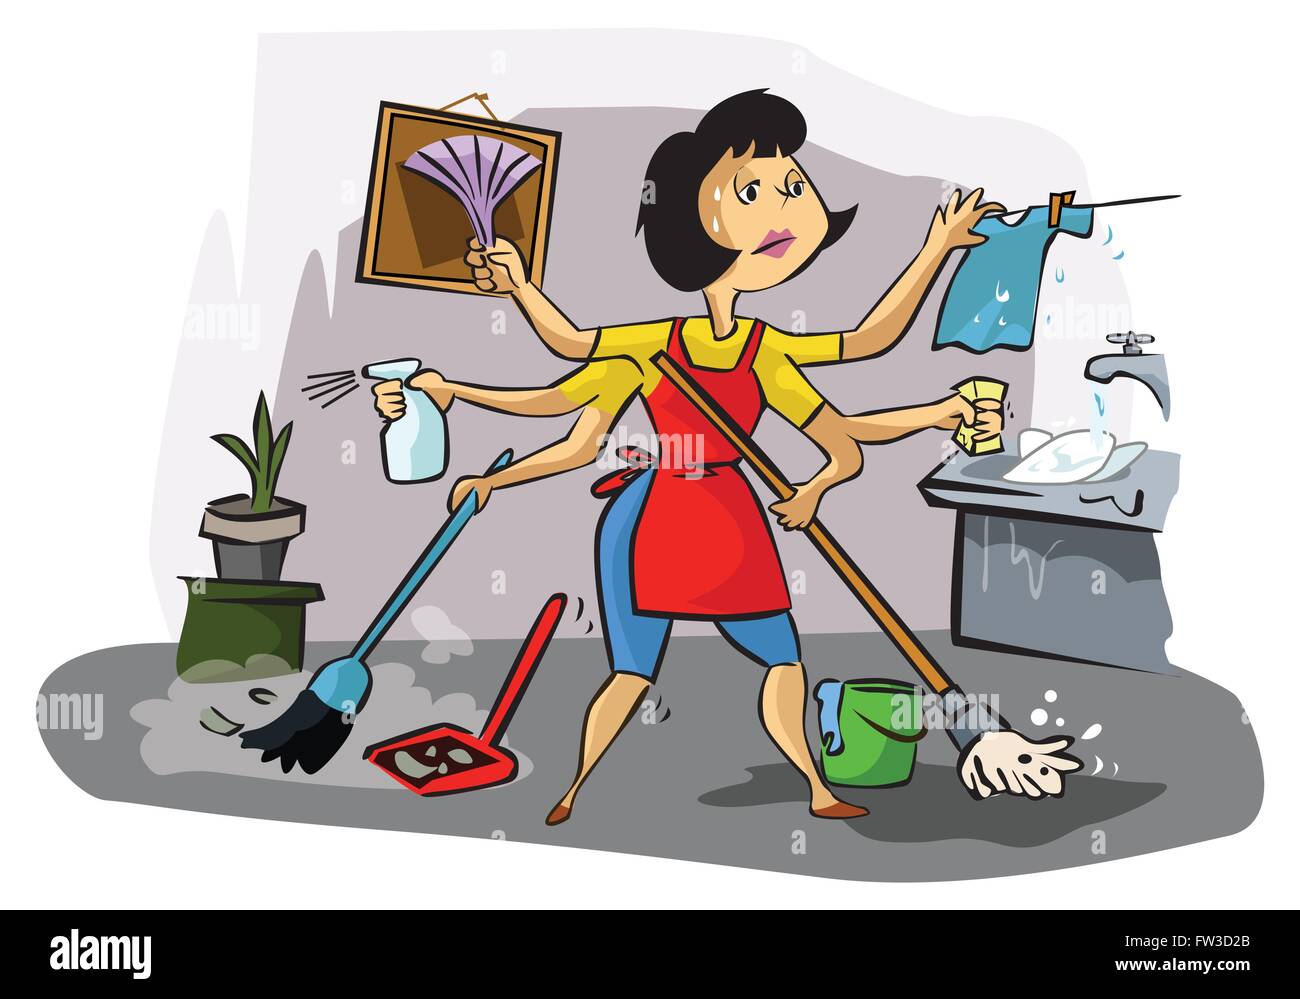 Буду делать уборку. Стирка уборка готовка. Шарж домохозяйка. Женщина вся в домашних делах. Уборка иллюстрация.